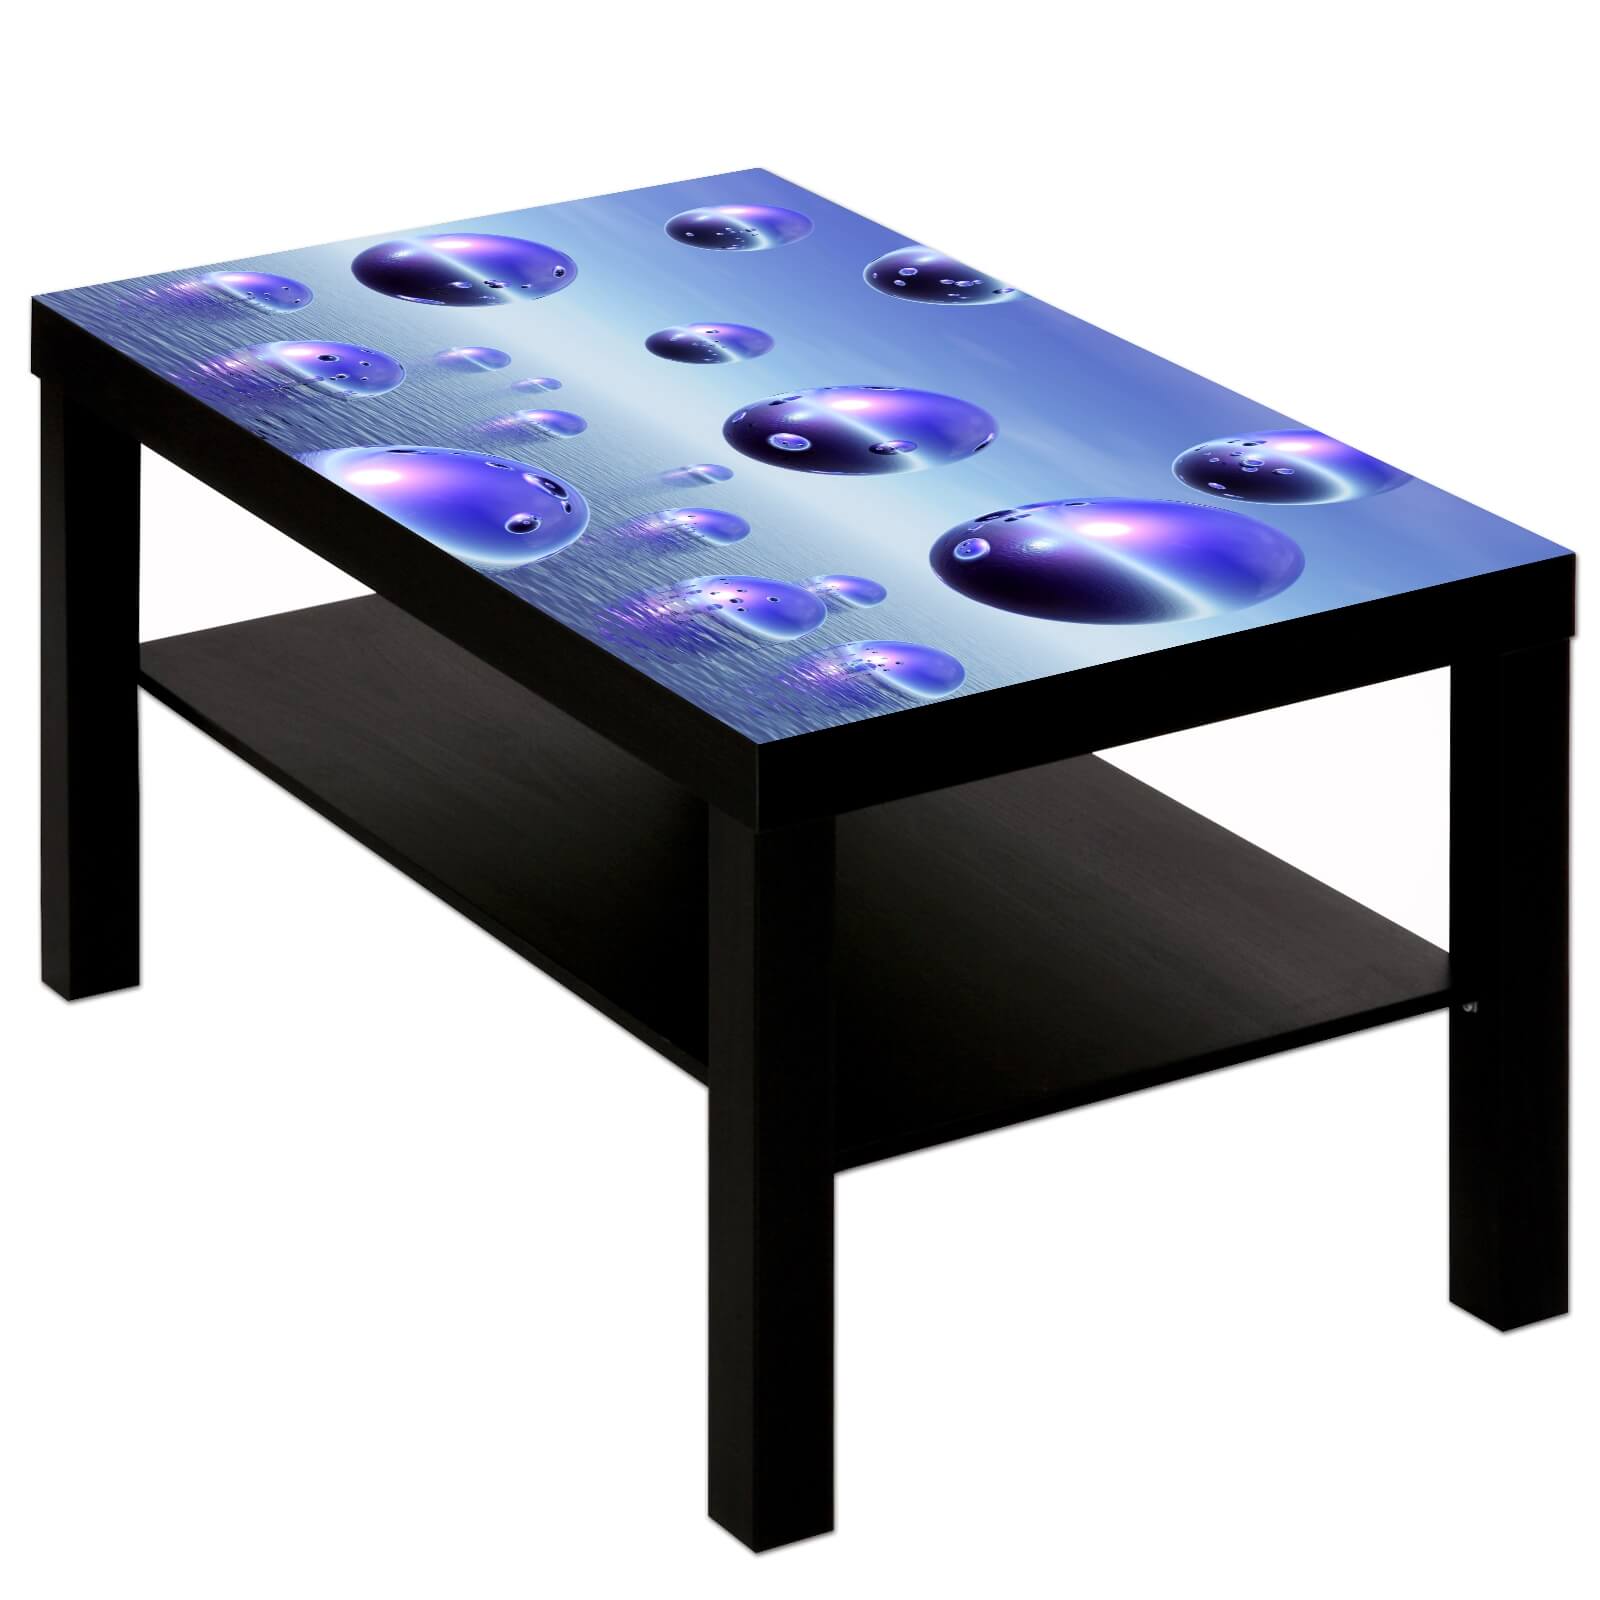 Couchtisch Tisch mit Motiv Bild Muster Kugeln in lila